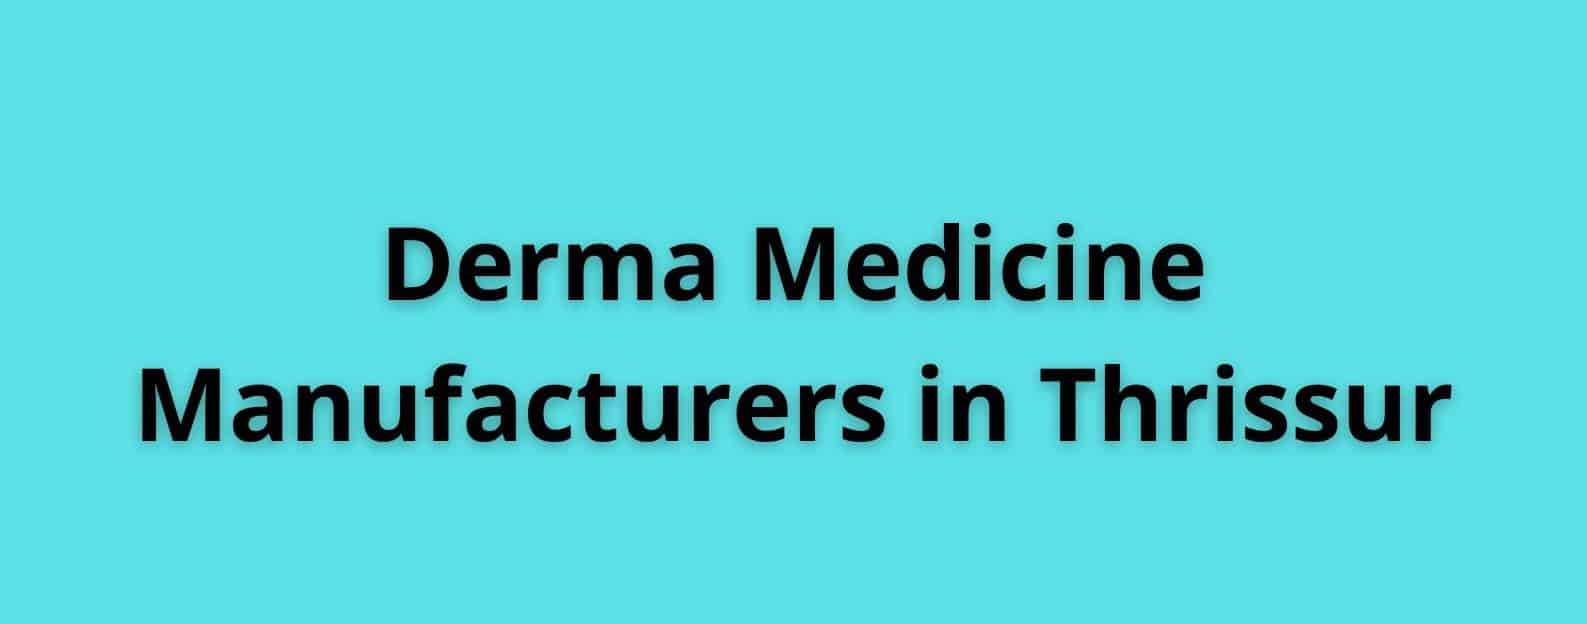 Derma Medicine Manufacturers in Thrissur